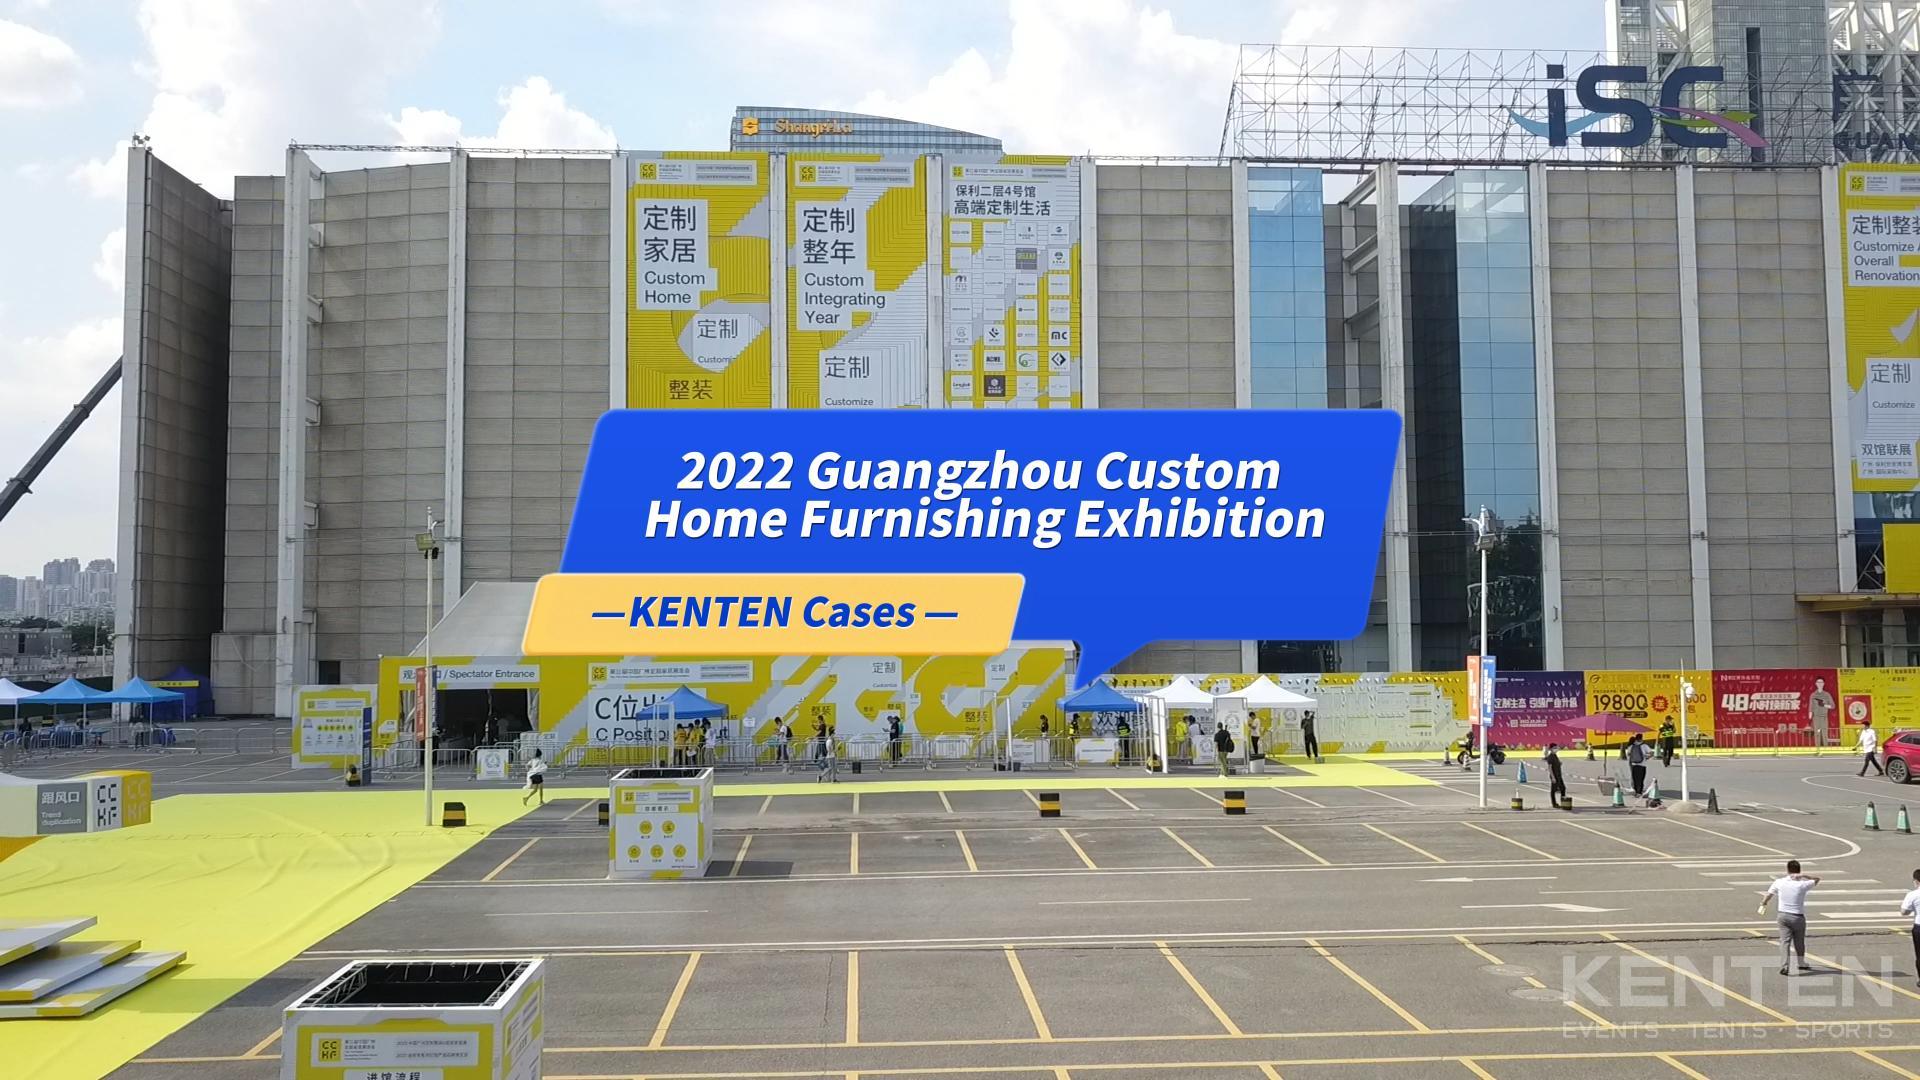 2022 Guangzhou Custom Home Furnishing Exhibition - Tent case video